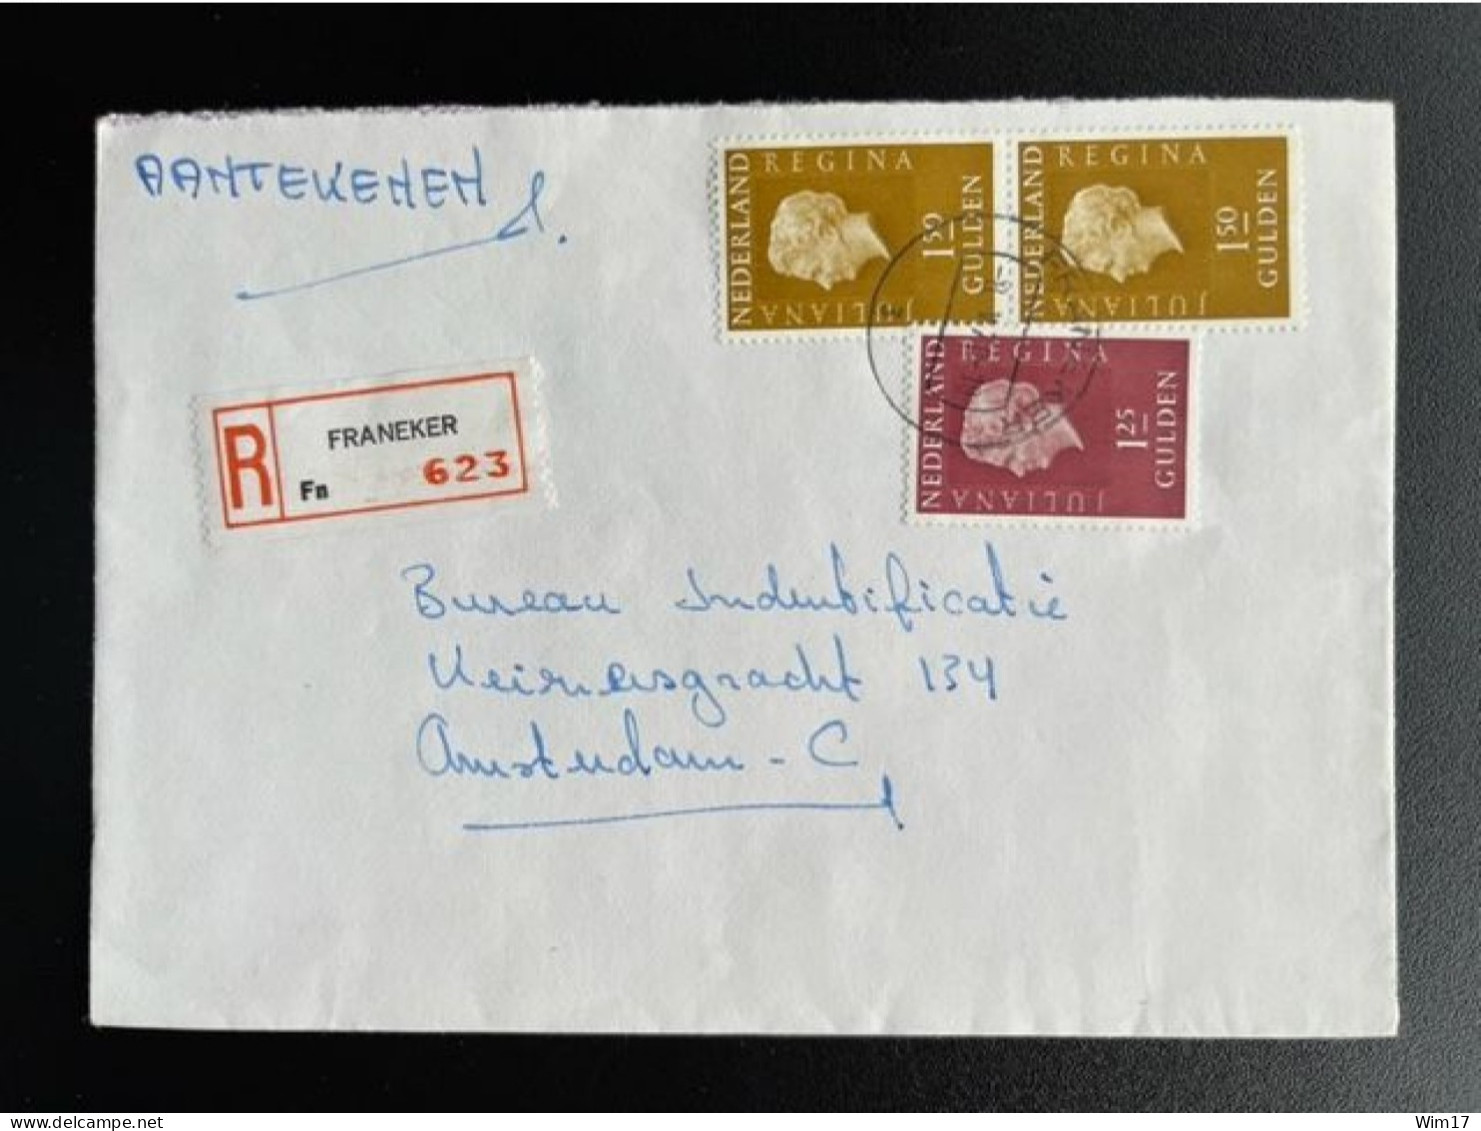 NETHERLANDS 1978 REGISTERED LETTER FRANEKER TO AMSTERDAM 08-05-1978 NEDERLAND AANGETEKEND - Lettres & Documents